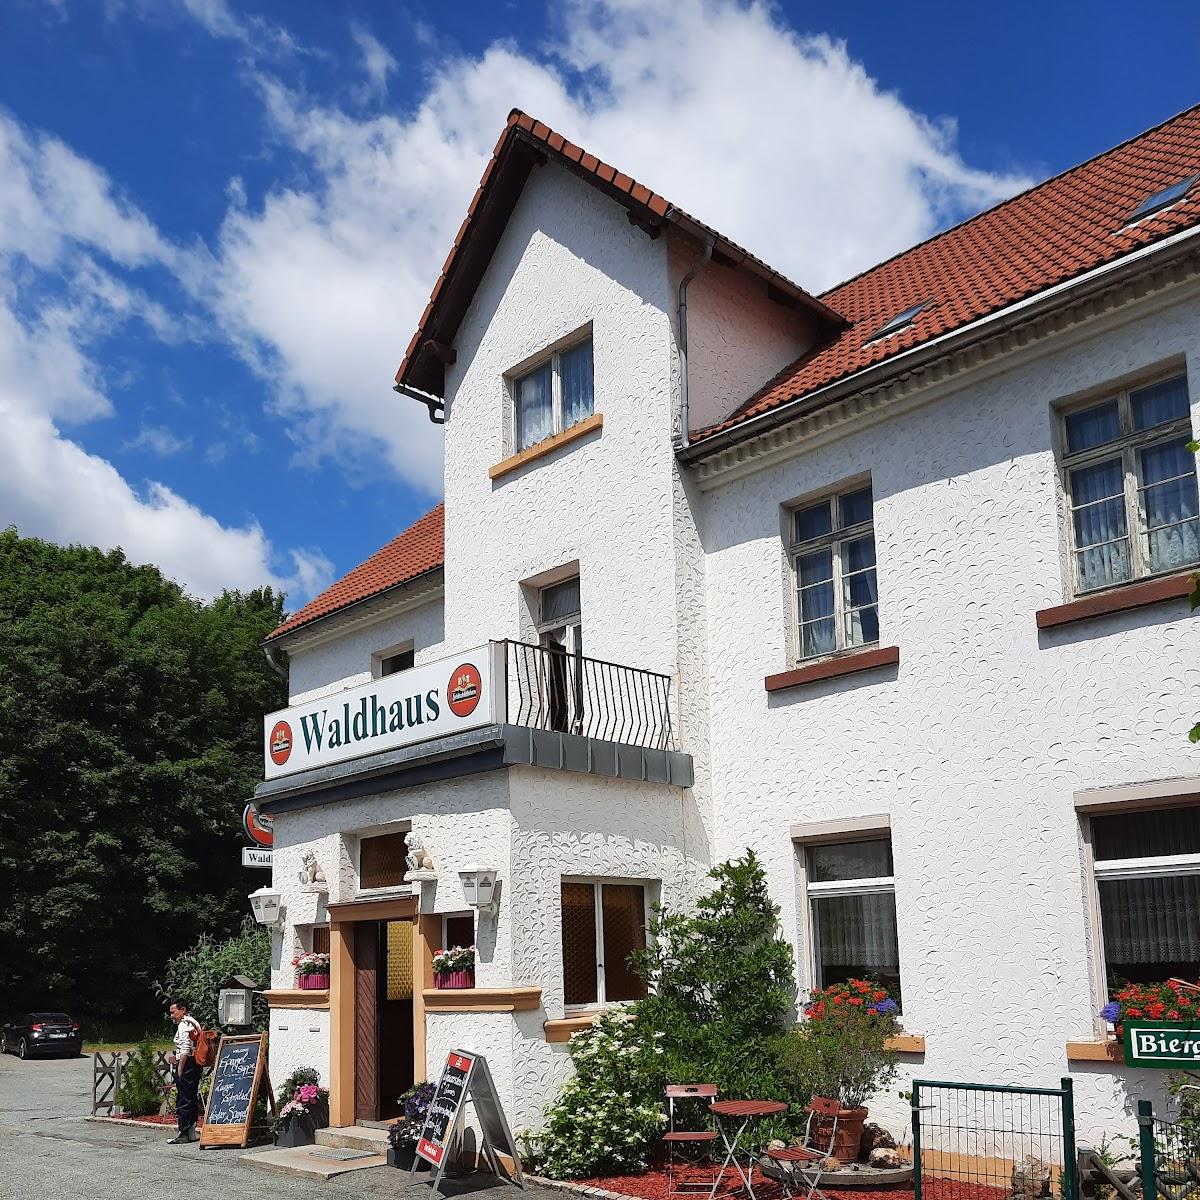 Restaurant "Gaststätte Waldhaus" in Steinigtwolmsdorf